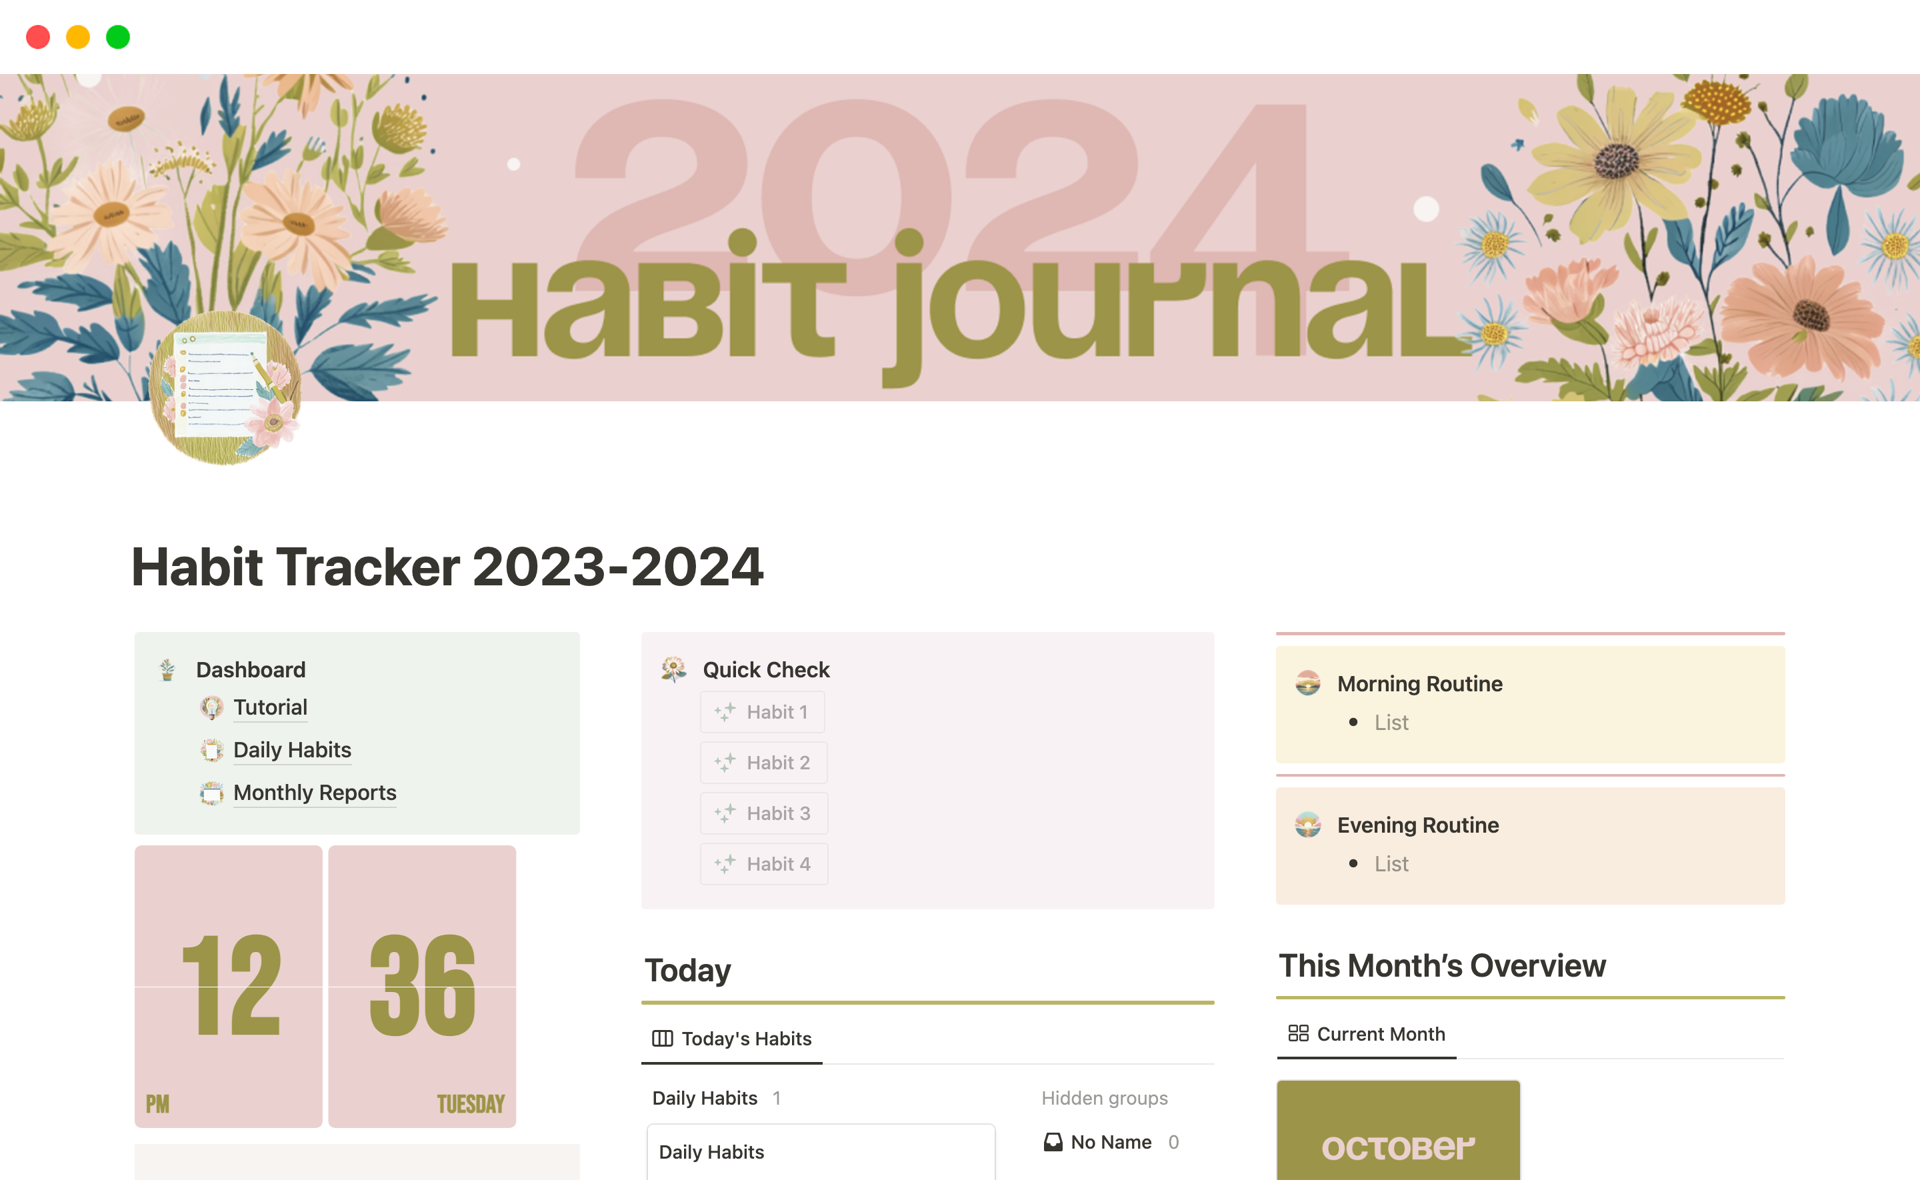 Uma prévia do modelo para Habit Tracker 2023-2024